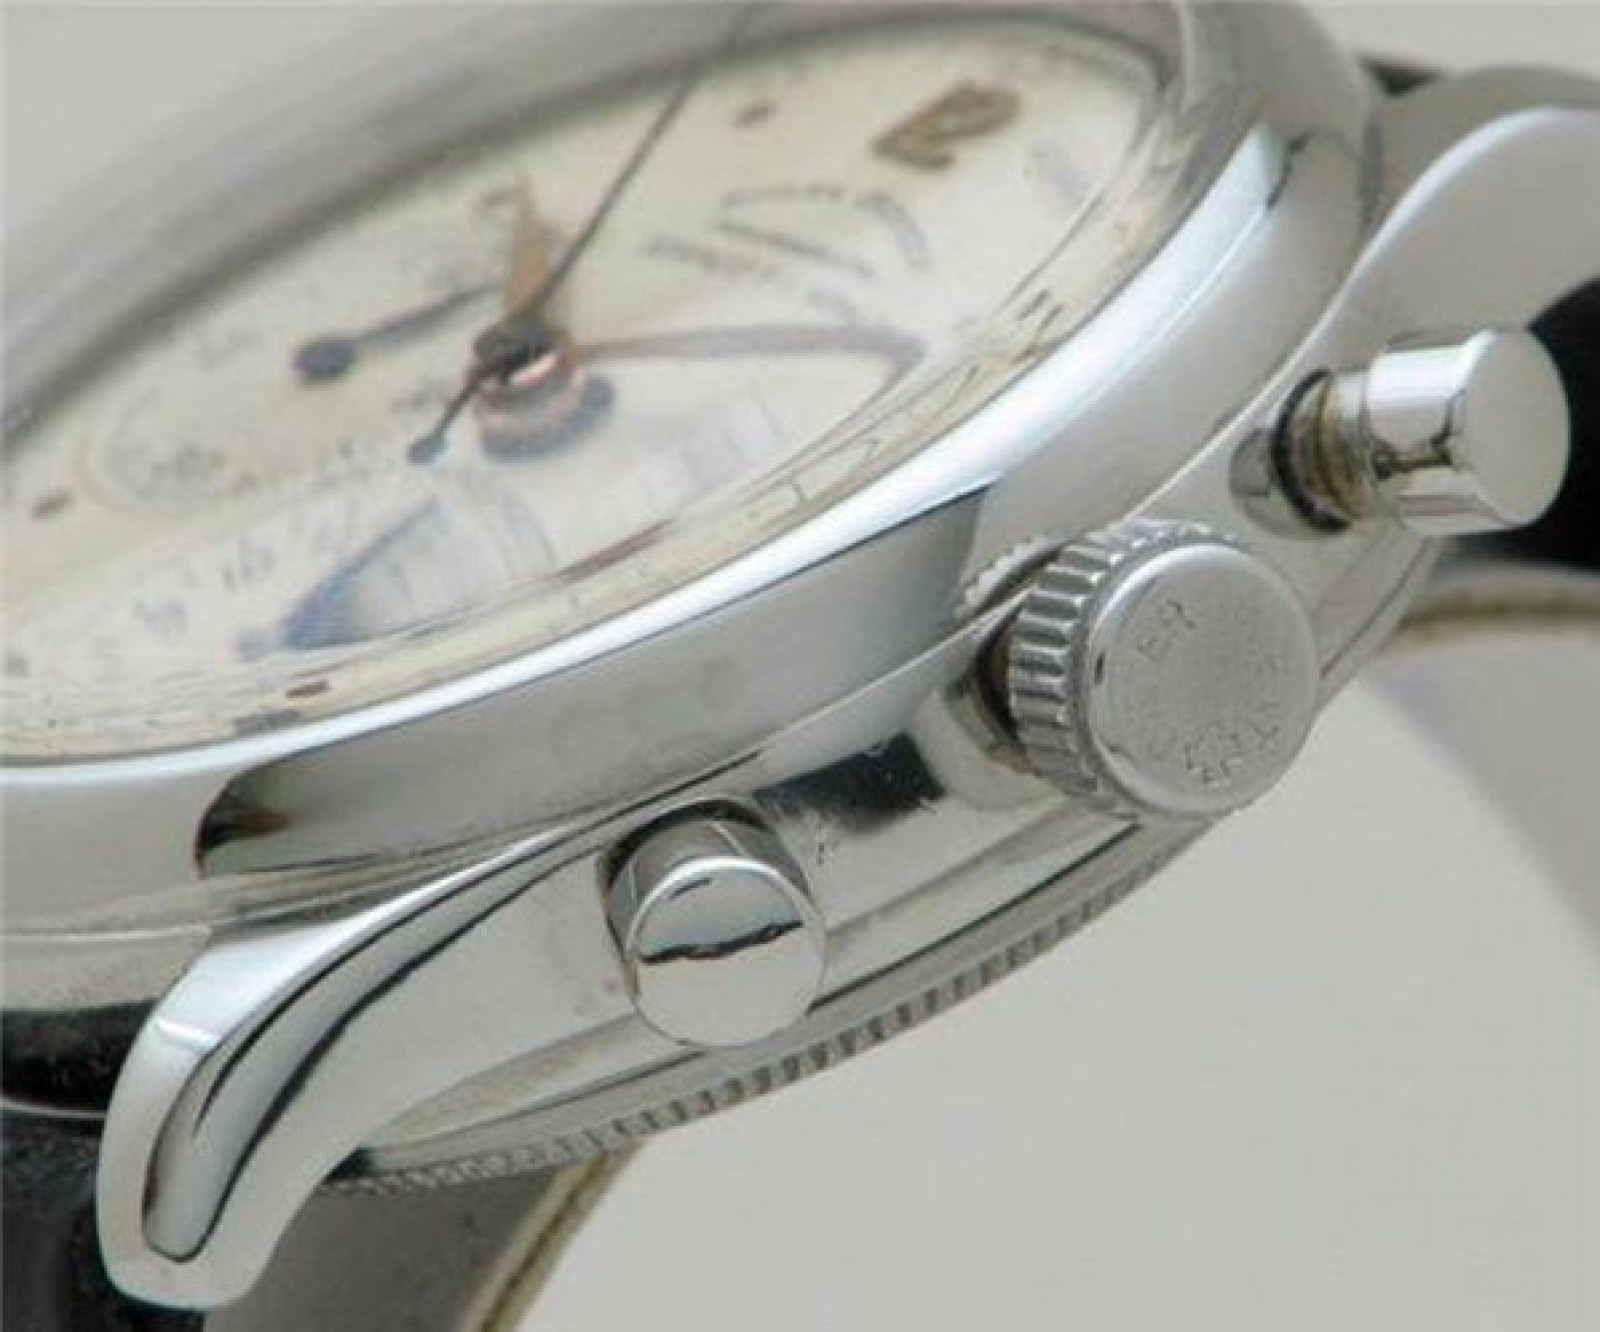 Vintage Rolex Chronograph 4048